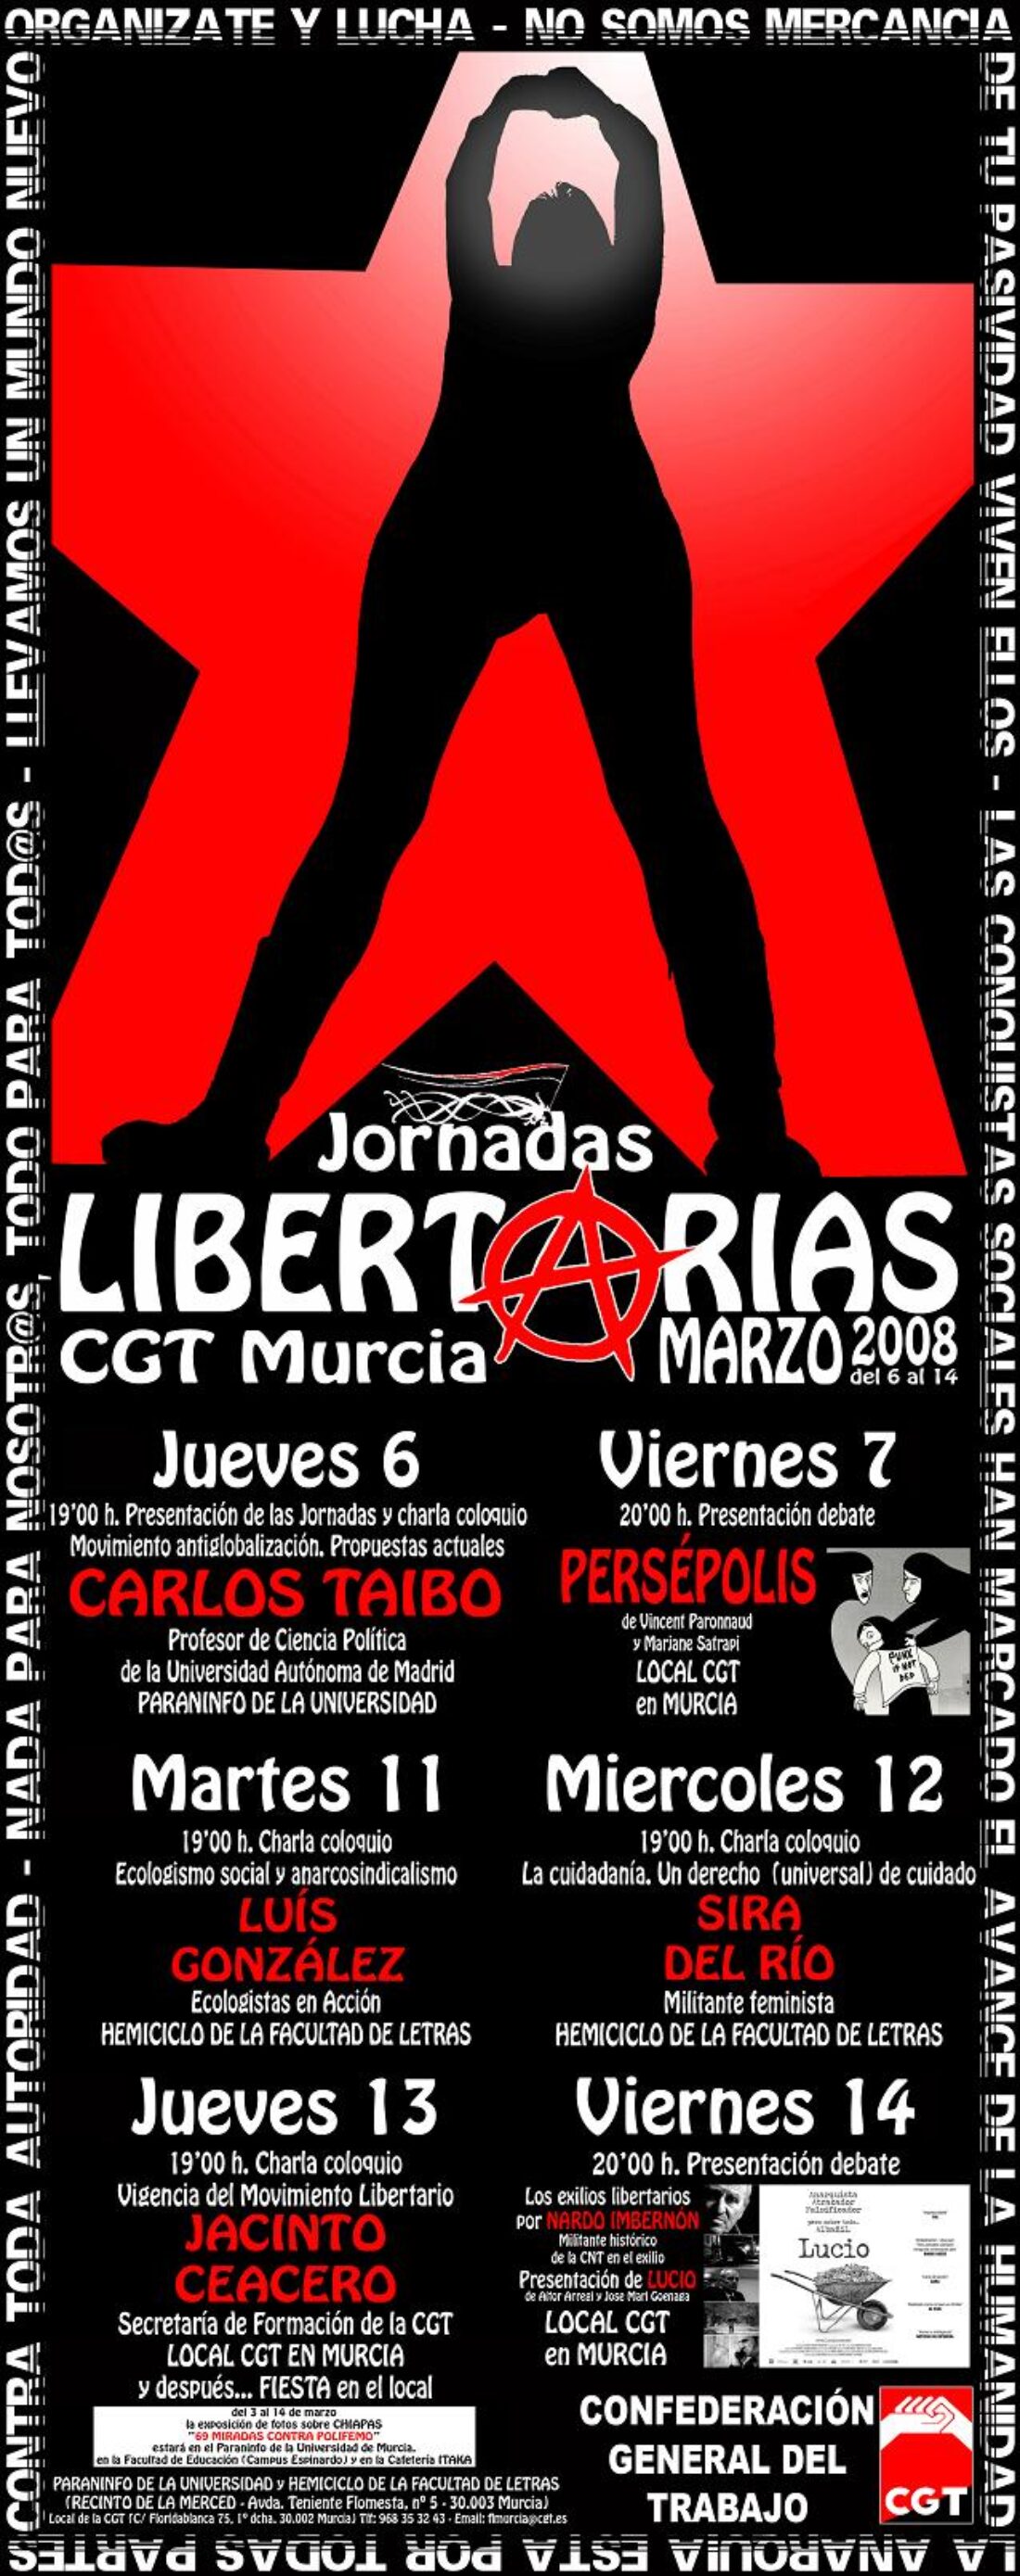 Jornadas Libertarias de CGT Murcia del 6 al 14 de marzo